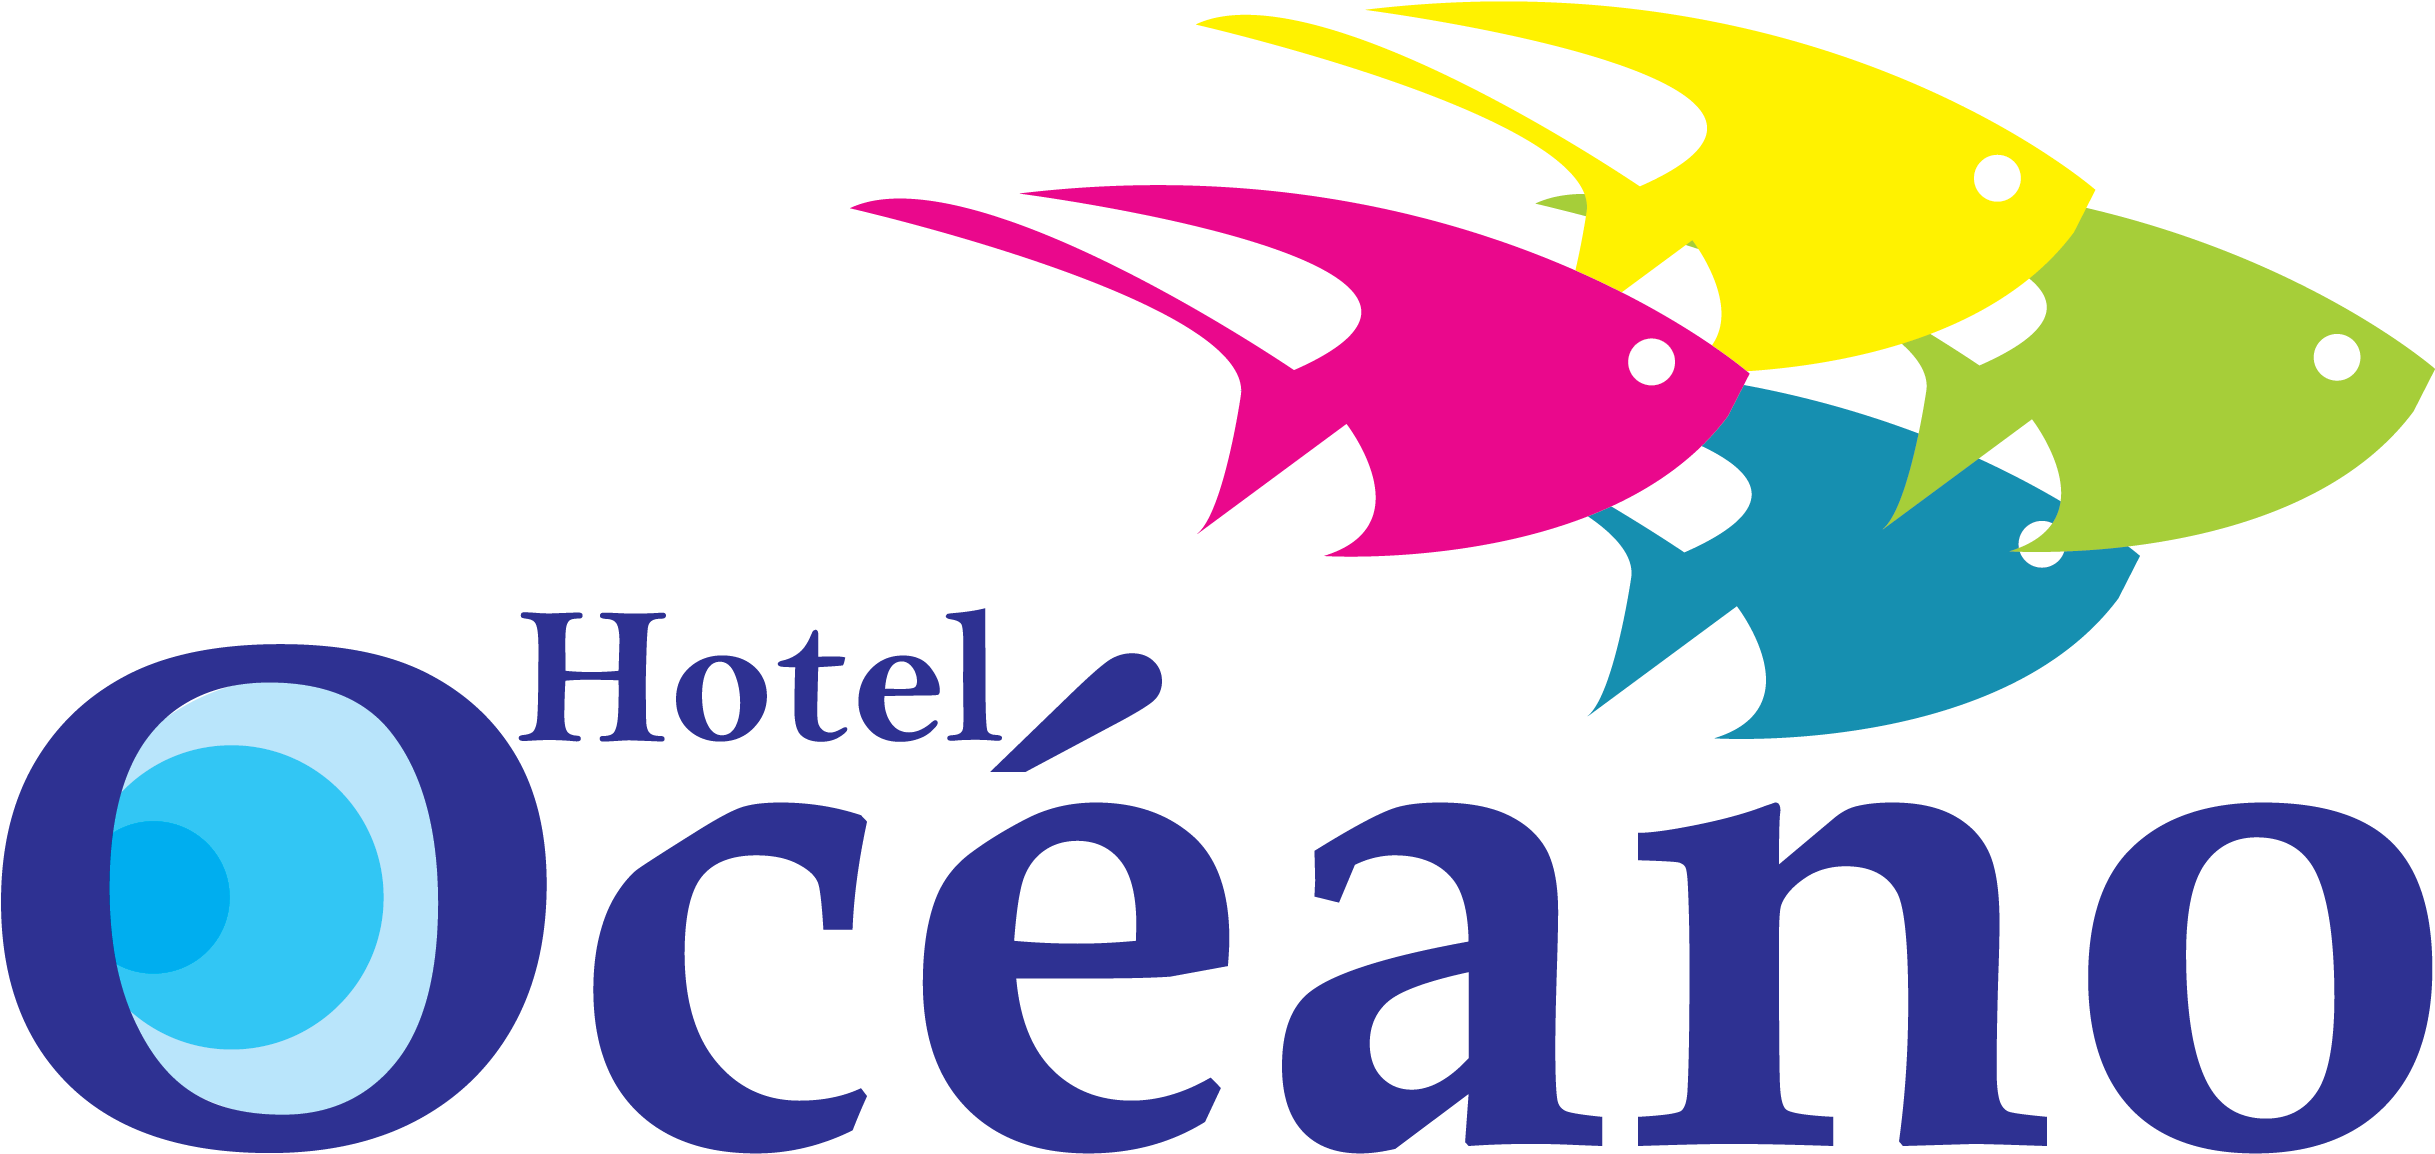 Hotel Océano En Cartagena De Indias, Cercano A La Zona - Hotel Oceano Cartagena (2706x1481)